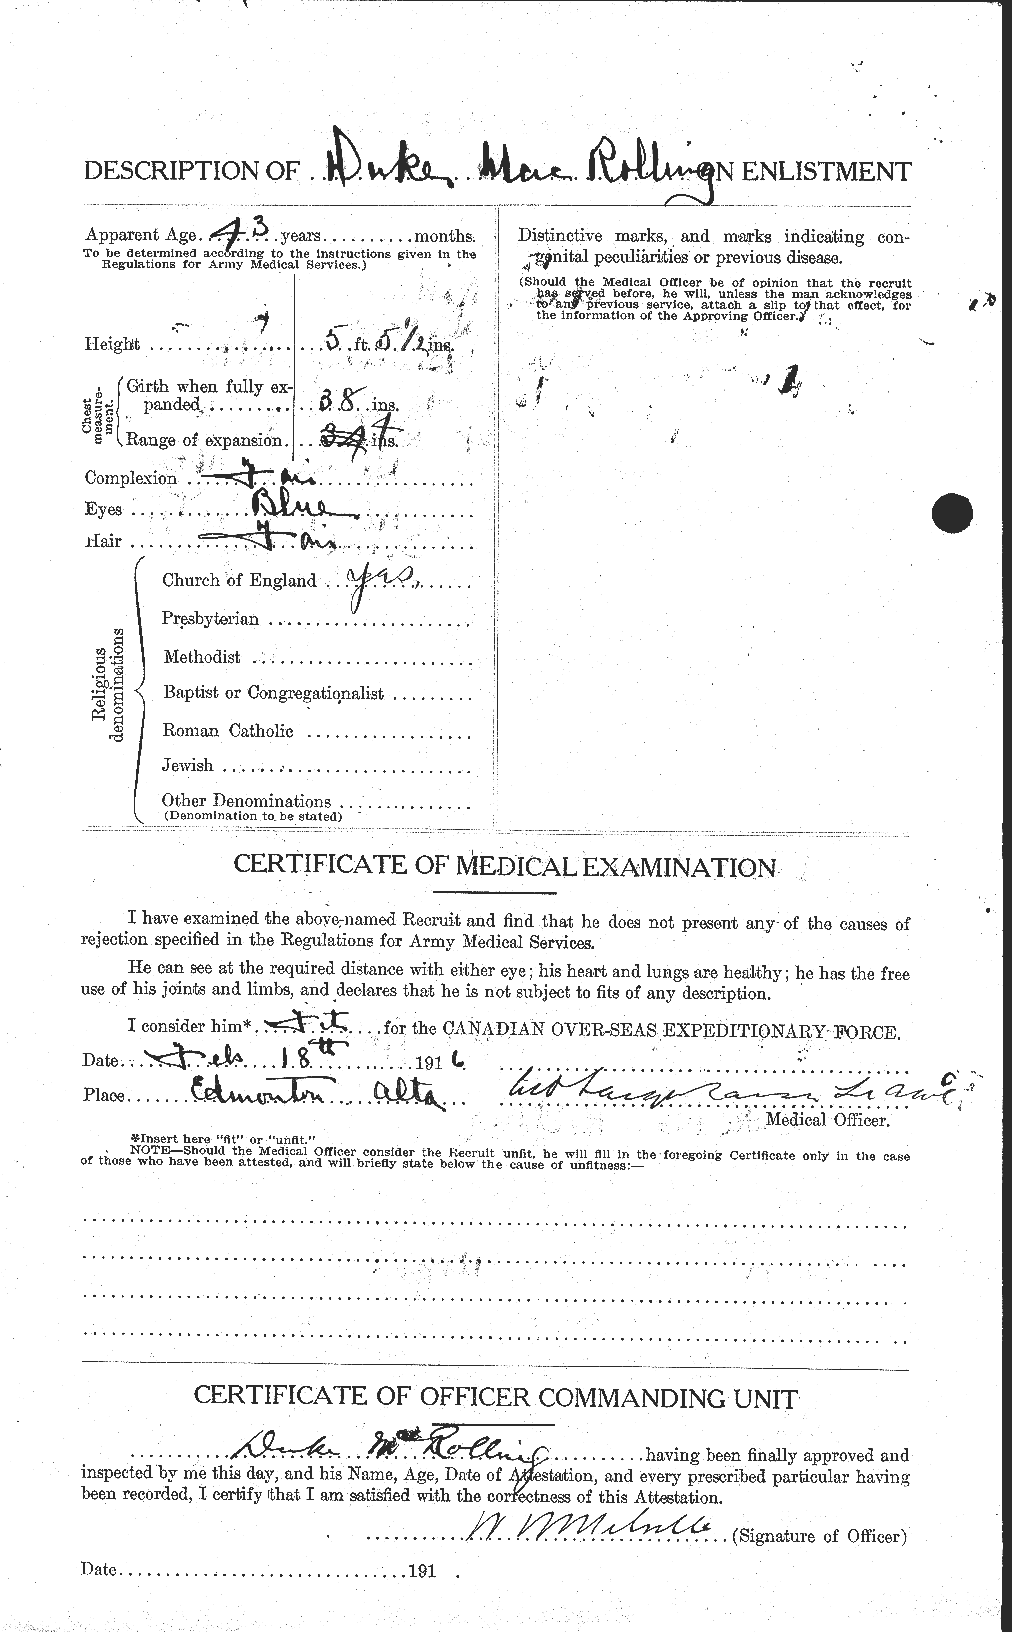 Dossiers du Personnel de la Première Guerre mondiale - CEC 544760b